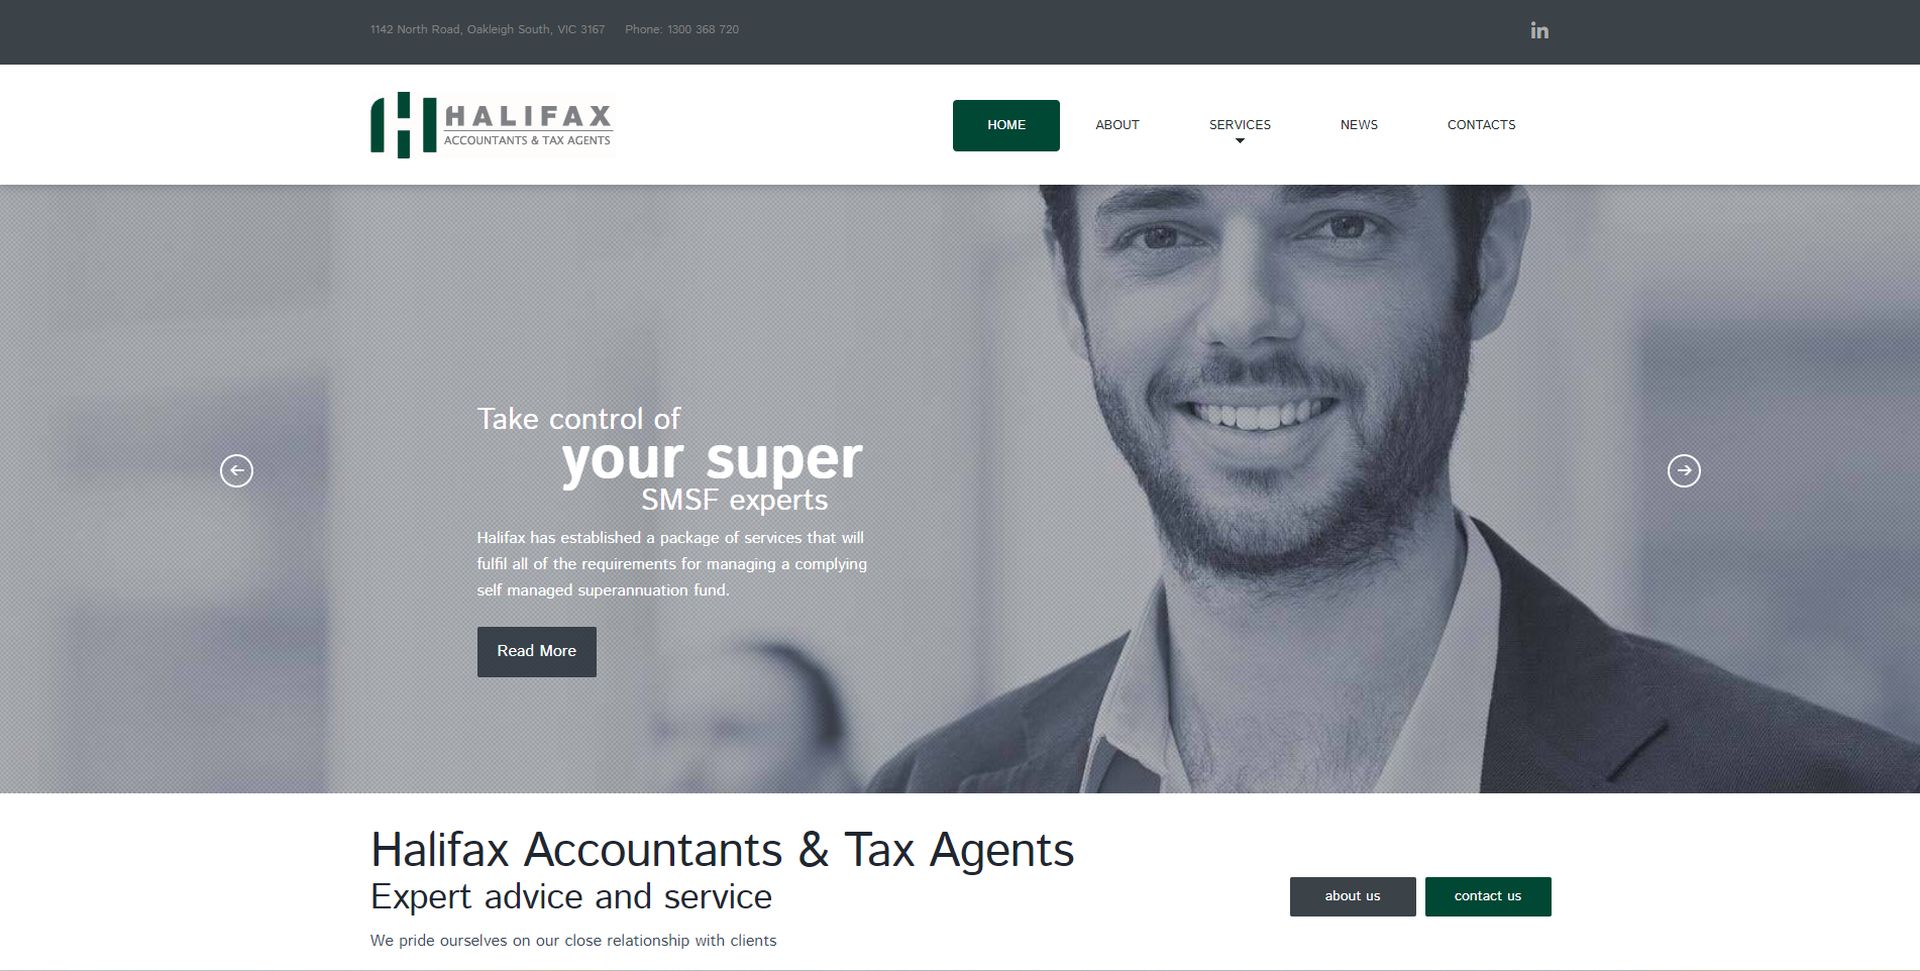 halifax accountants & tax agents